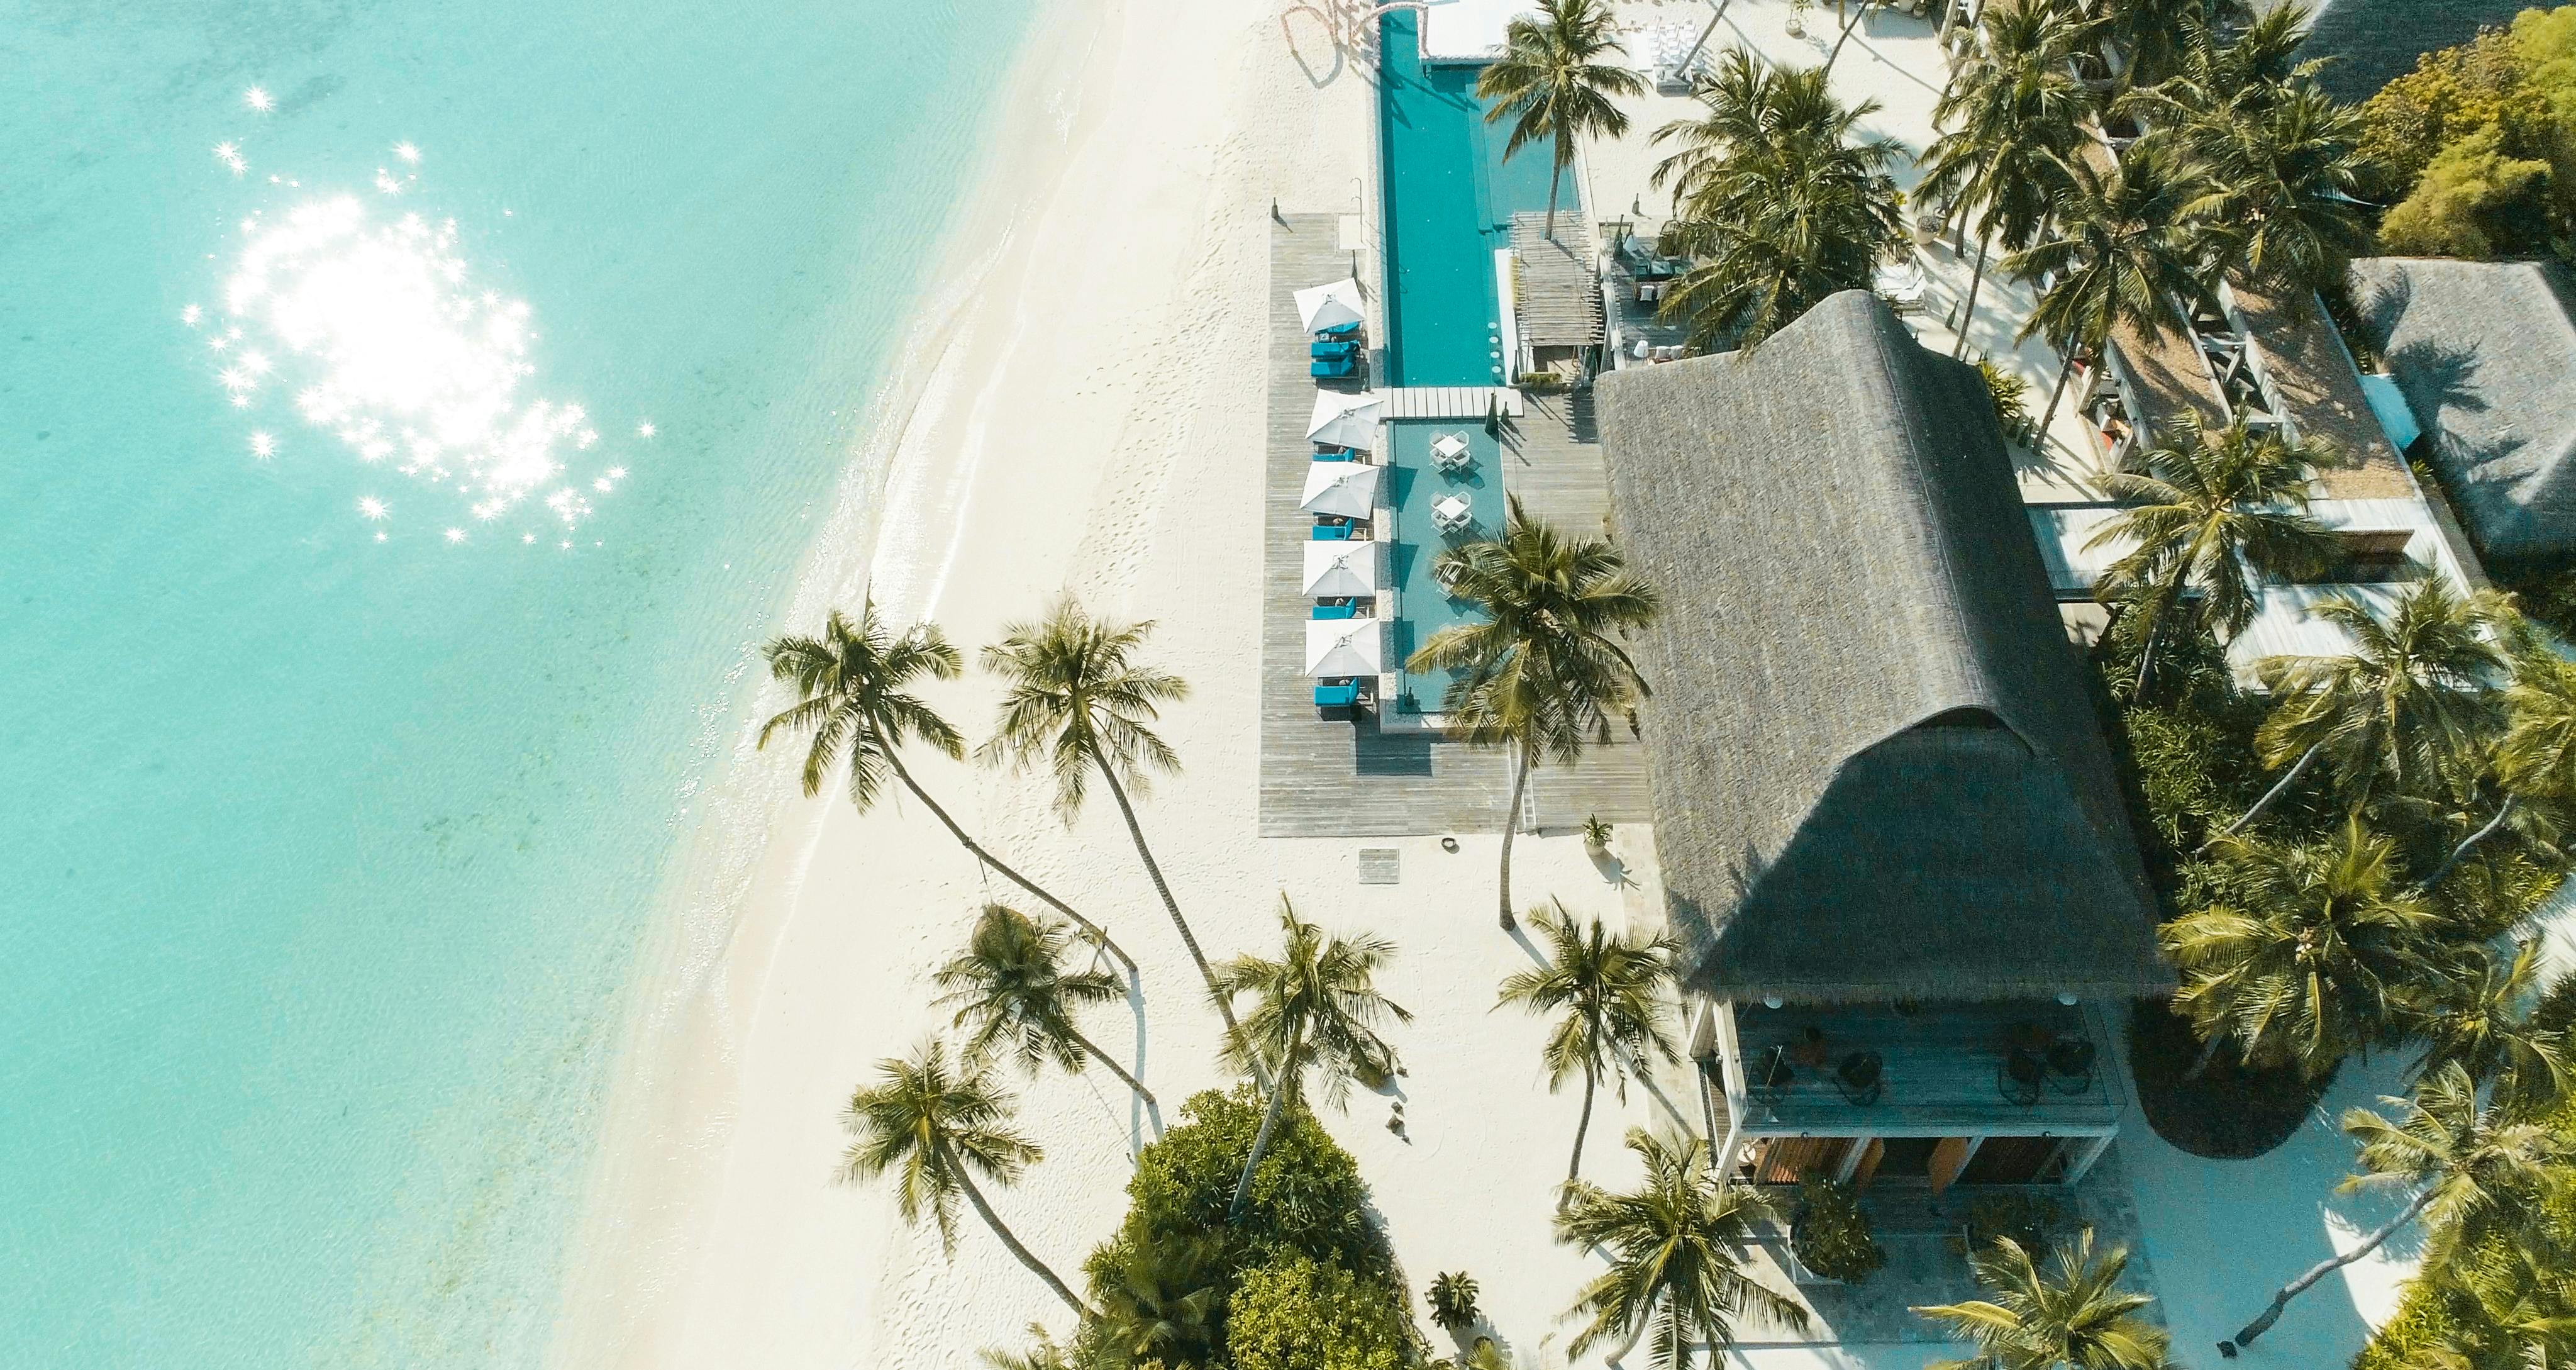 Aerial View of Beach Resort · Free Stock Photo